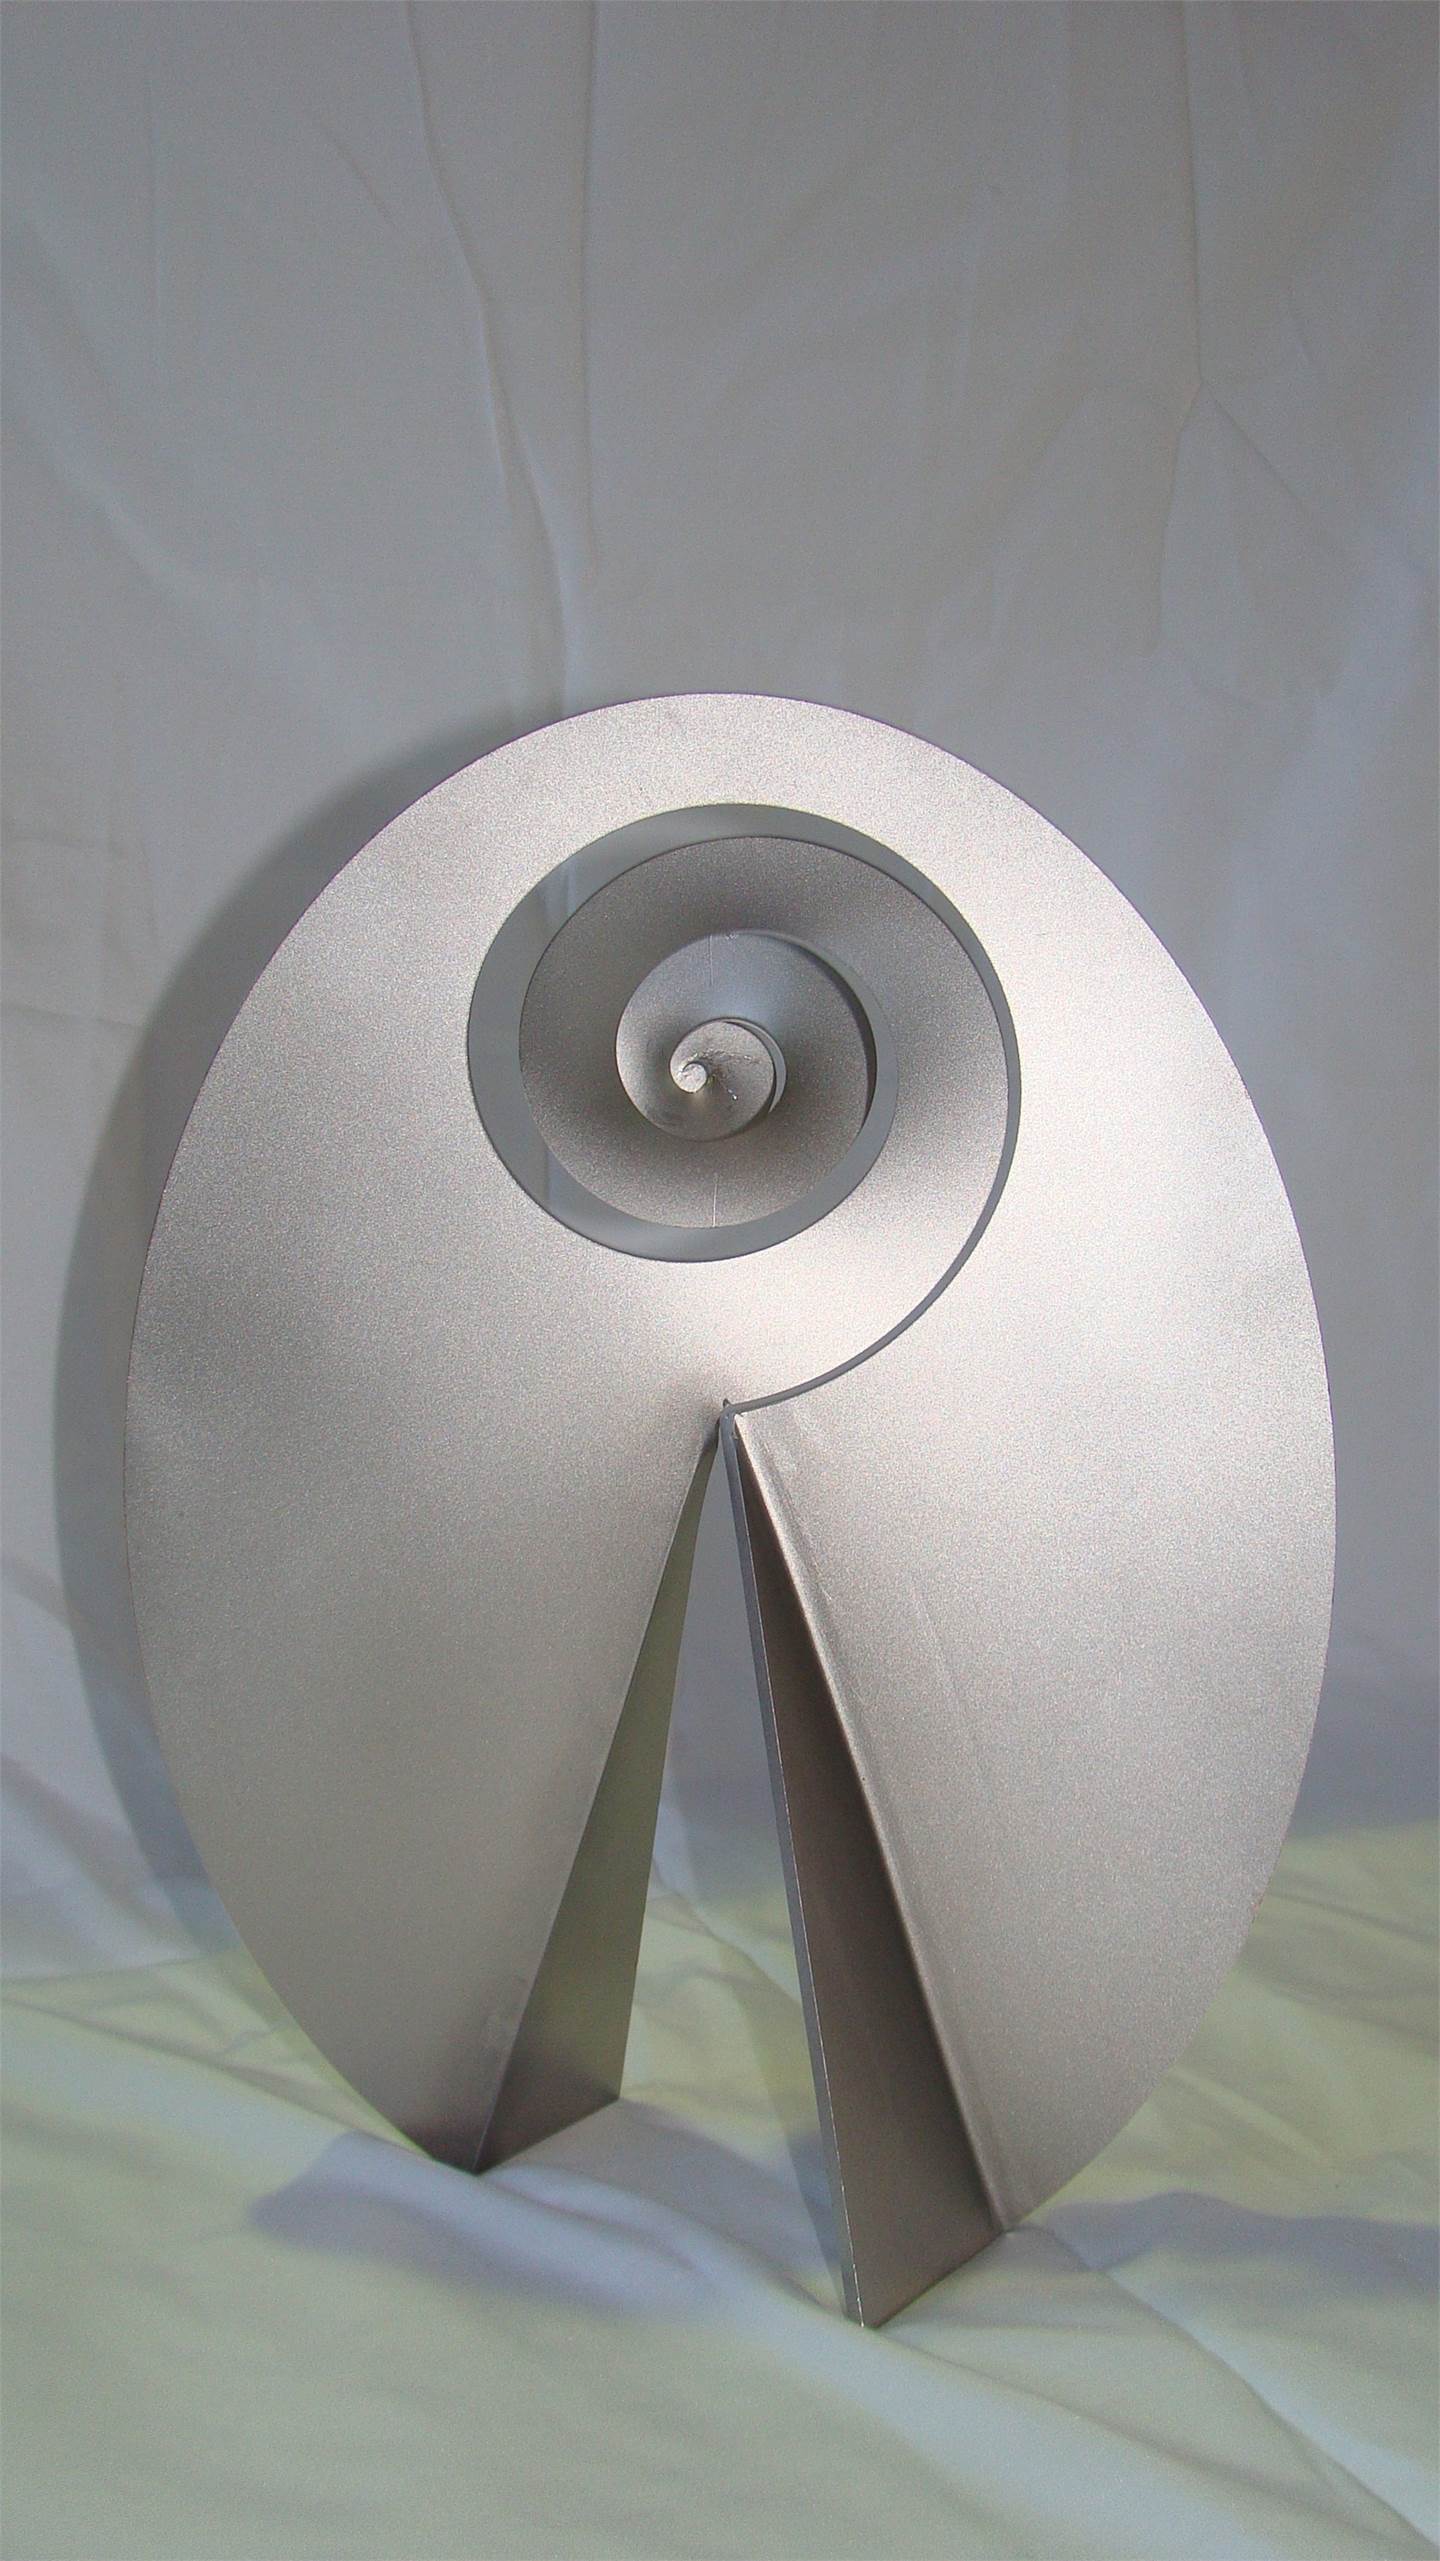 Carrapicho ó vento mareiro (Descomposición del óvalo), original Abstract Metal Sculpture by Juan Coruxo